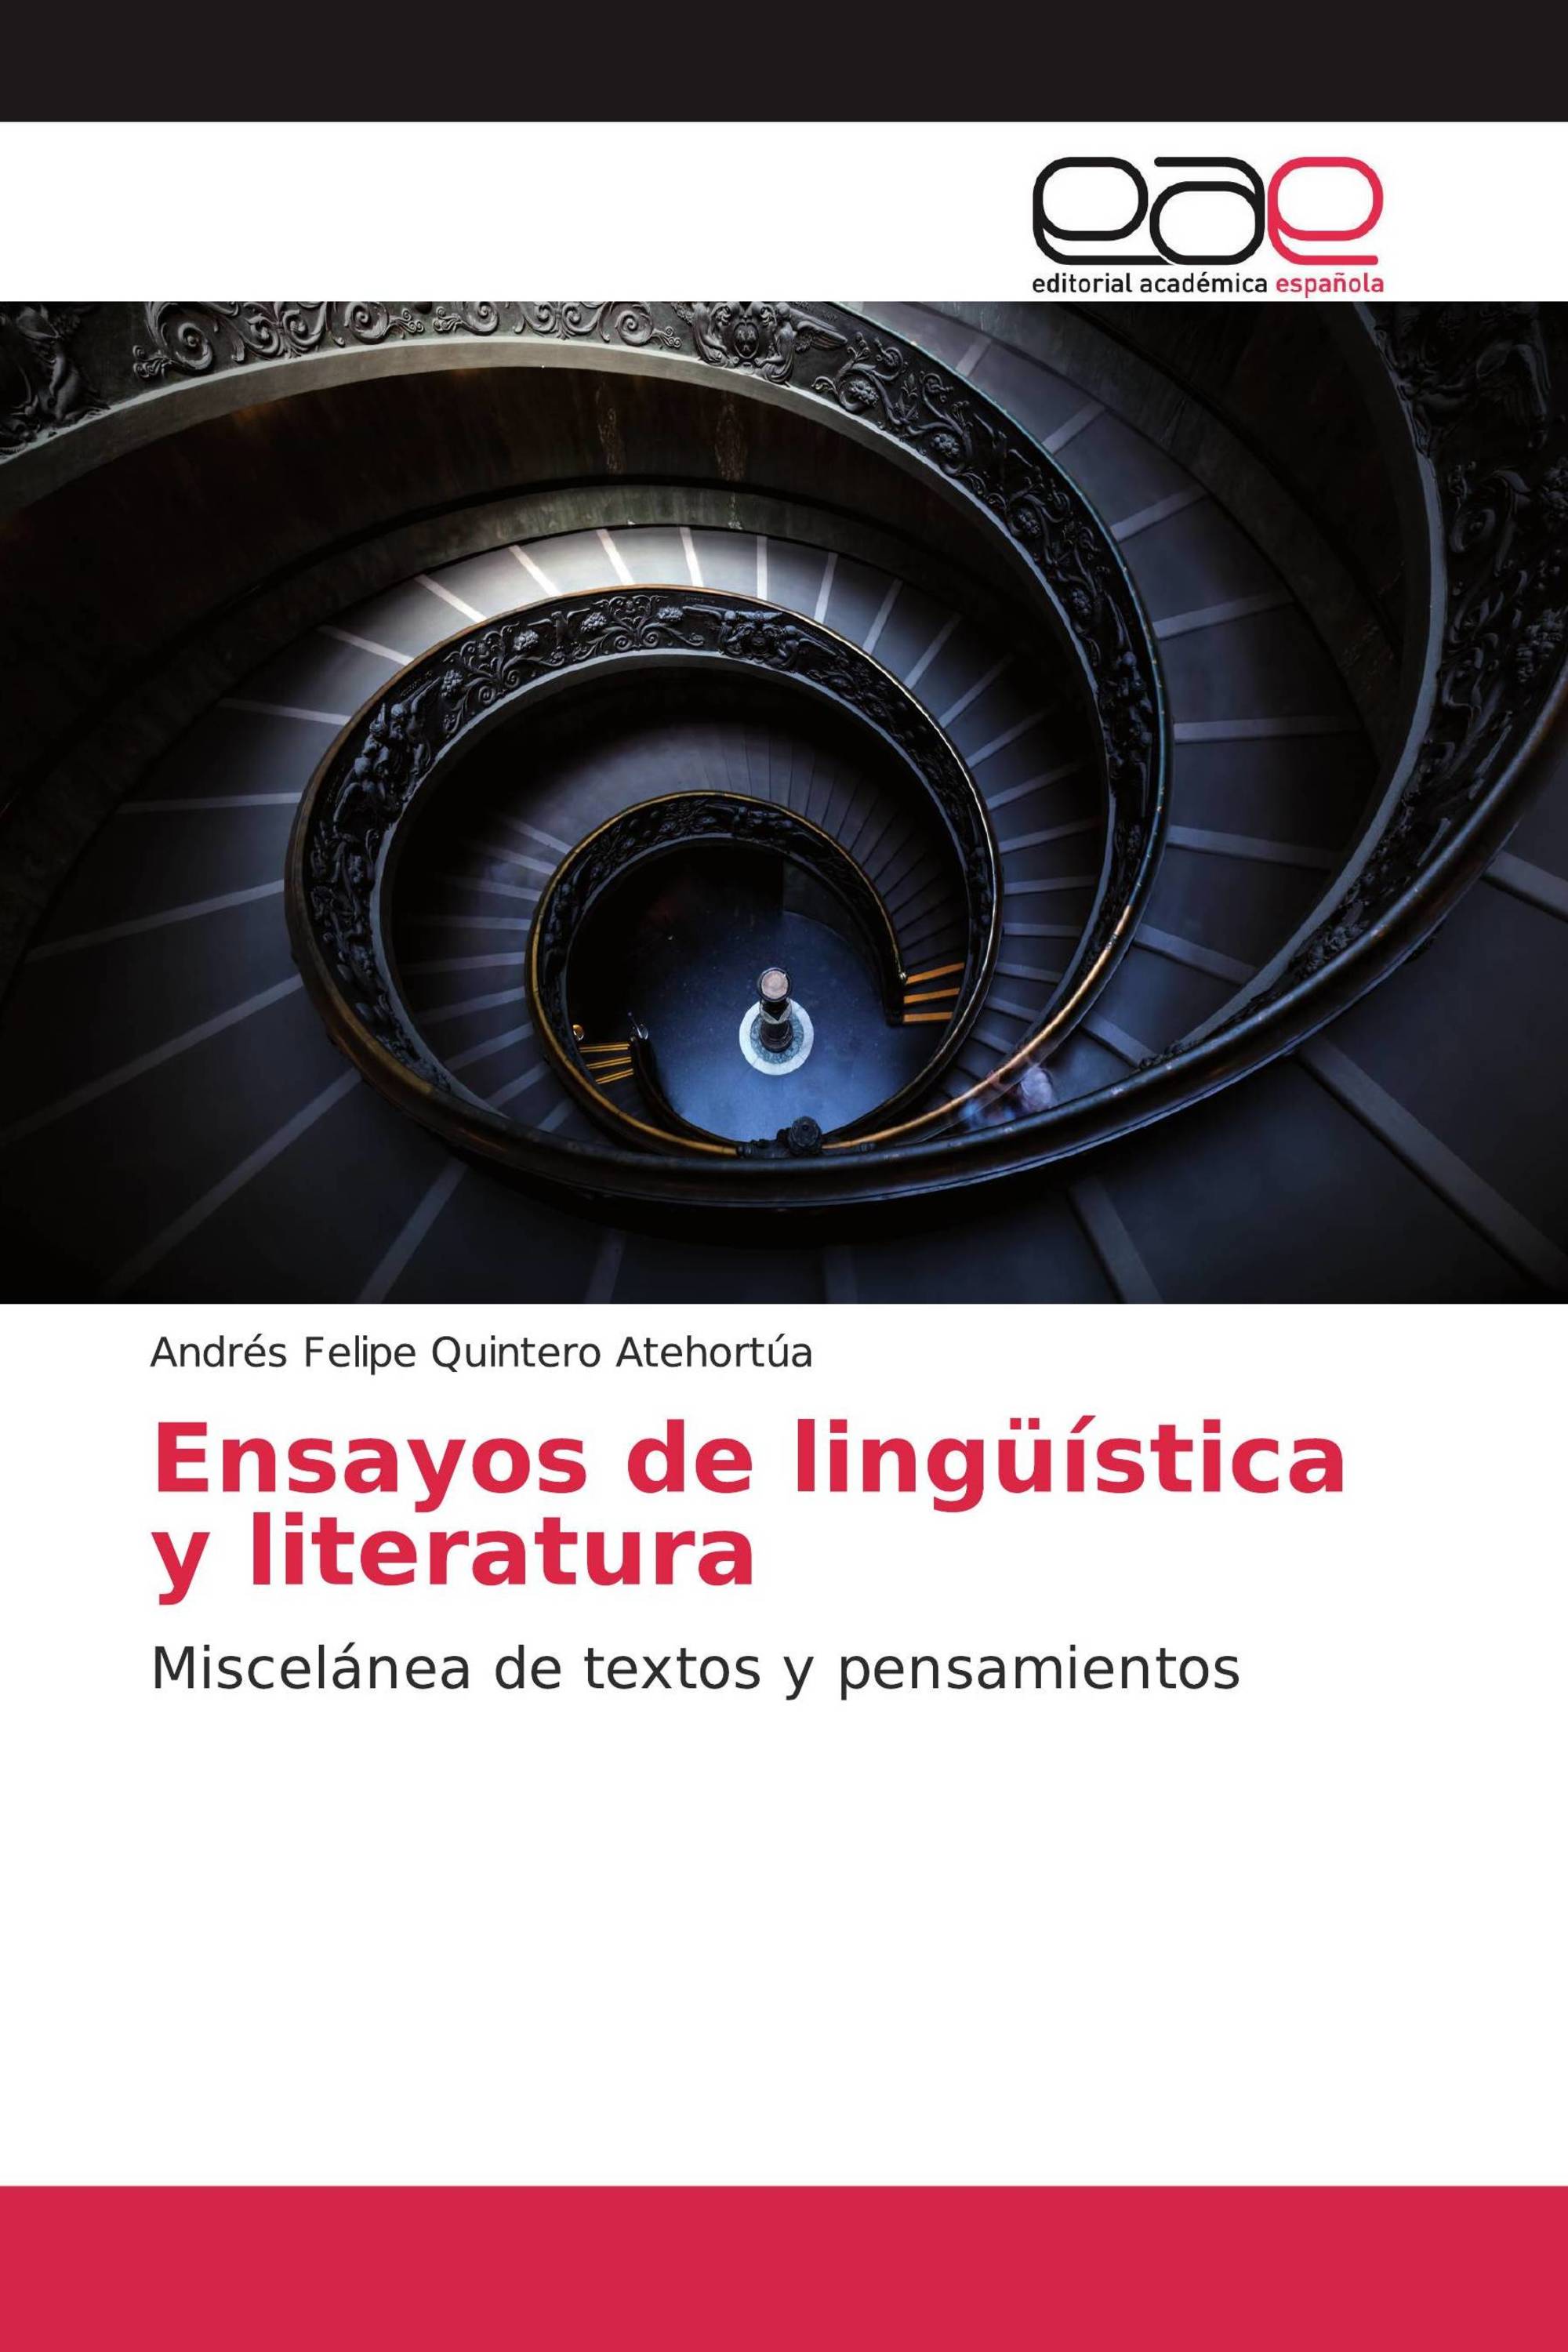 Ensayos de lingüística y literatura